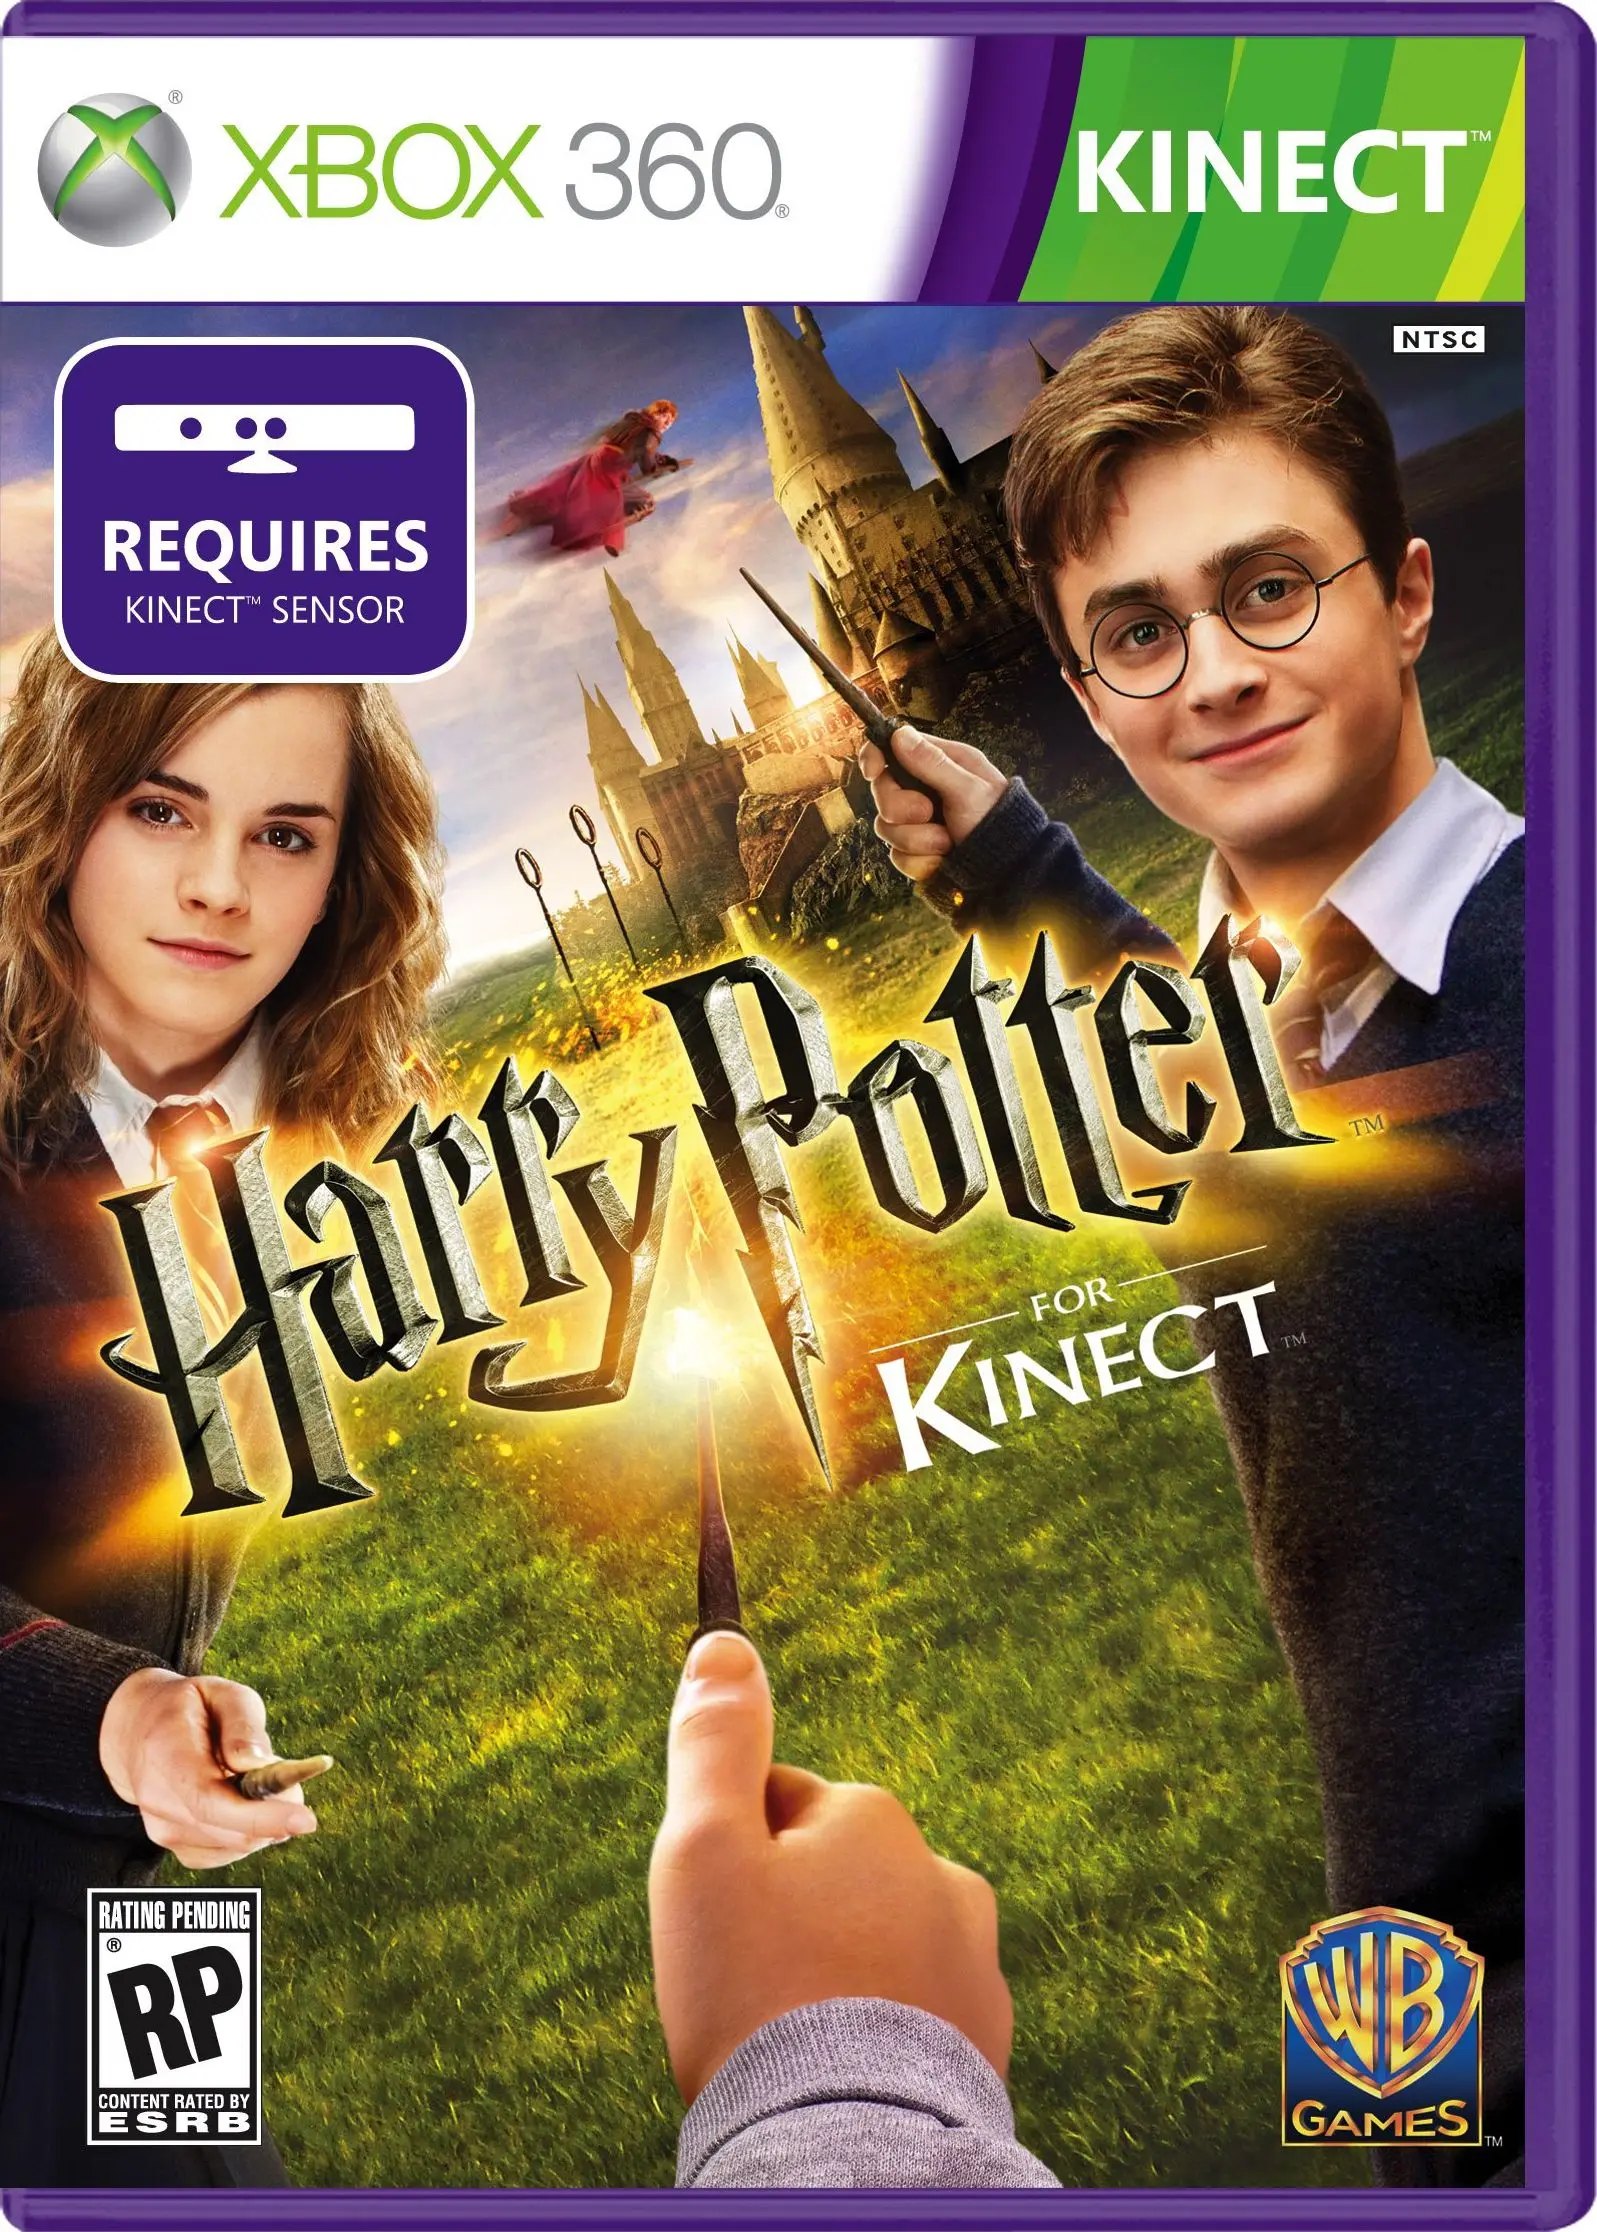 embargo Injusticia Serpiente Kinnect (Xbox 360) de Harry Potter, 360 juegos usados para Xbox 360,  consola de juegos de famicom, caja de juegos usada|Ofertas de juegos| -  AliExpress